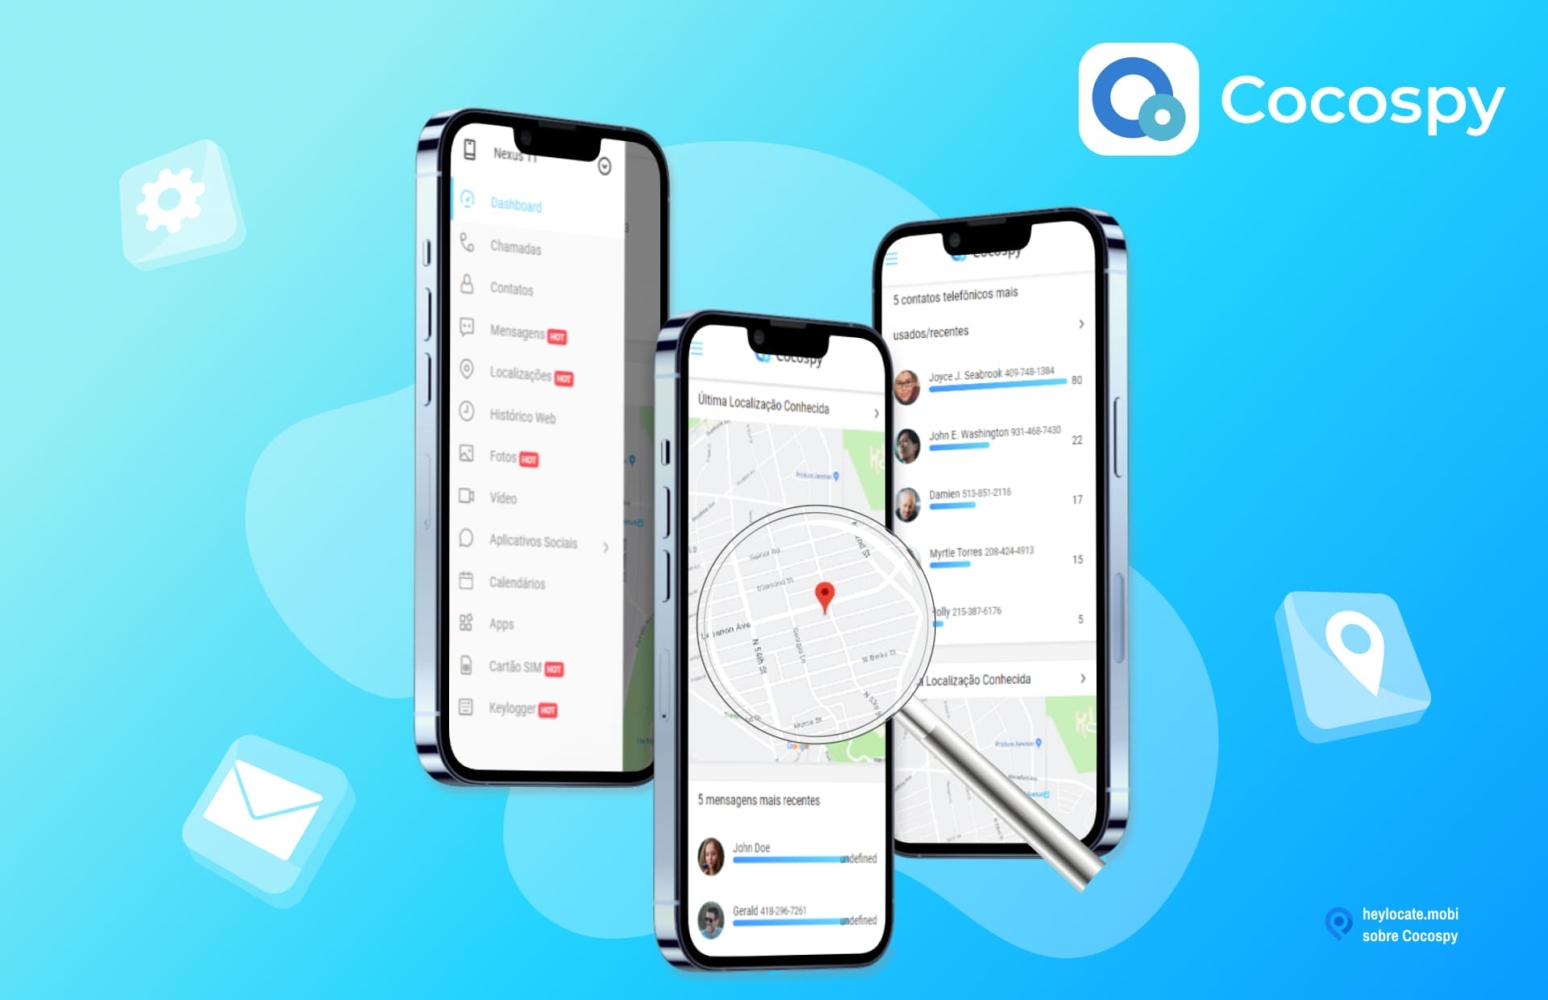 Imagem promocional do Cocospy mostrando a interface do aplicativo em smartphones. A interface inclui opções como chamadas, mensagens, localizações e mapa mostrando uma localização.